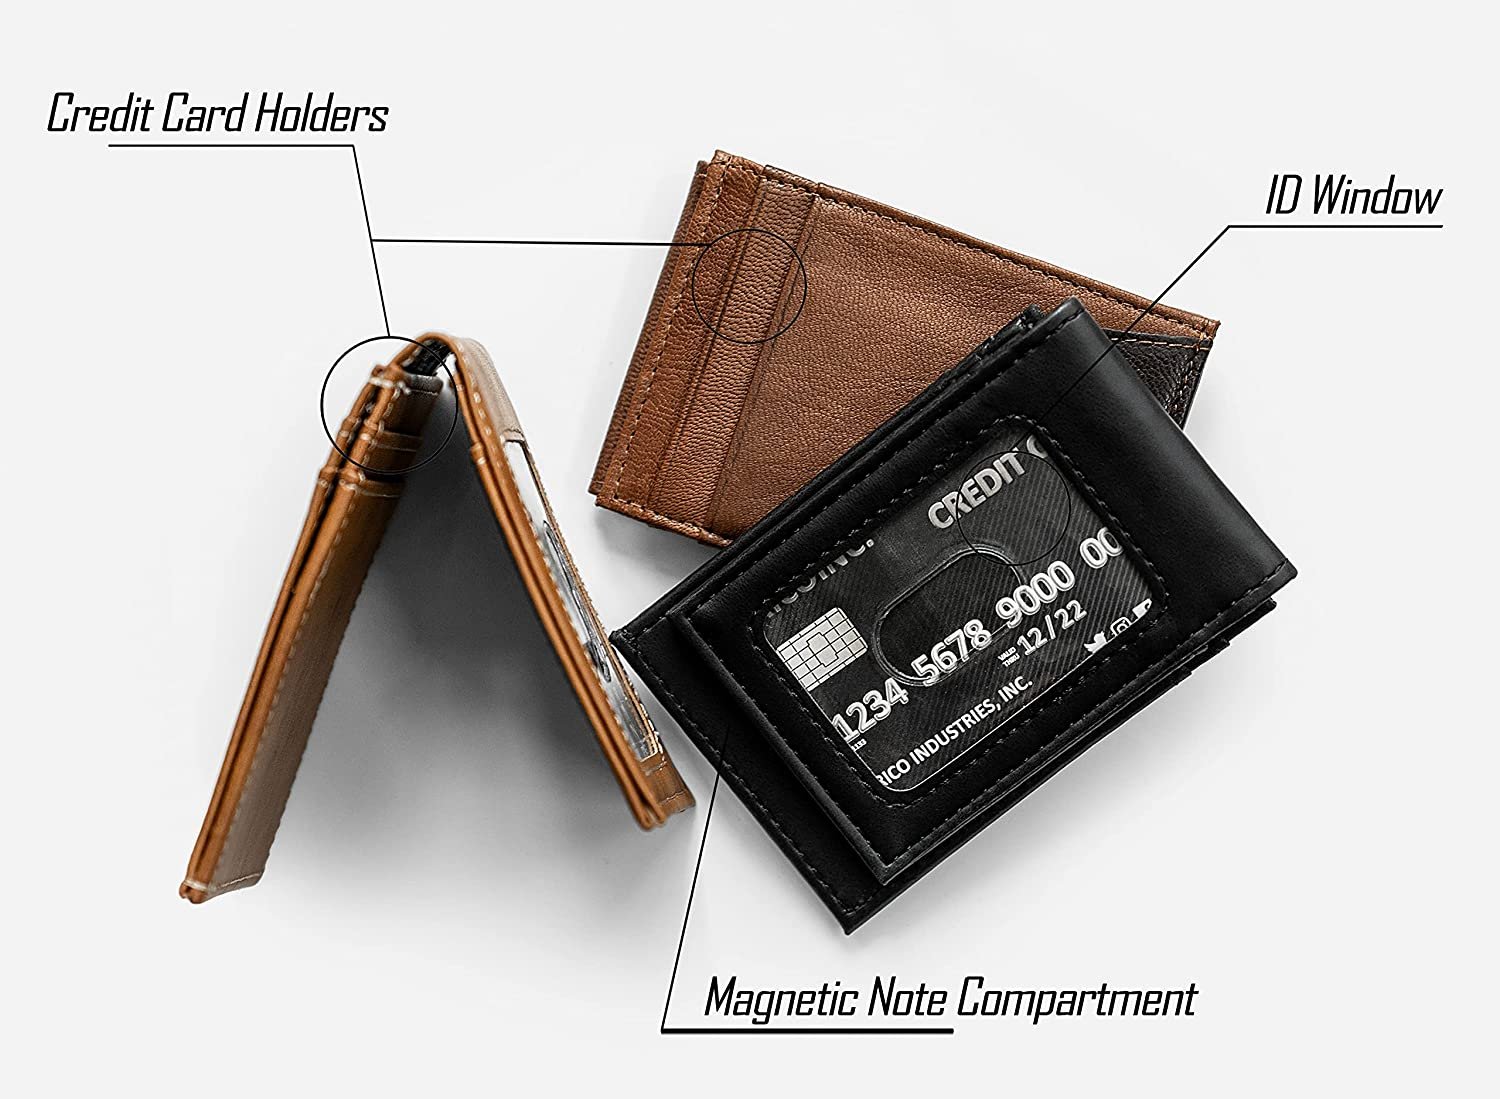 Golden State Warriors Premium Brown Leather Wallet, Front Pocket Magnetic Money Clip, Laser Engraved, Vegan